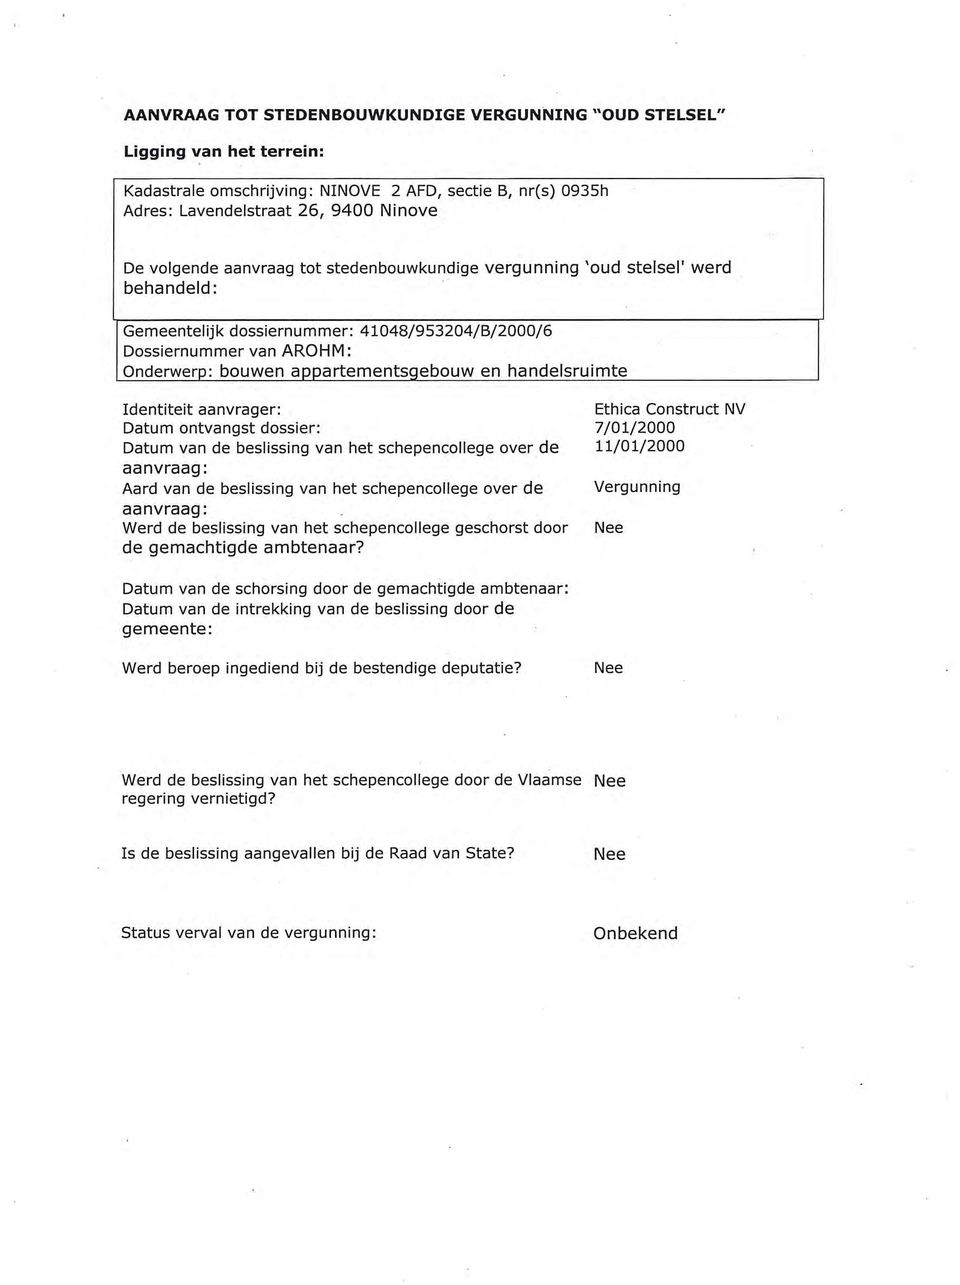 handelsruimte Identiteit aanvrager: Ethica Construct NV Datum ontvangst dossier: 7/01/2000 Datum van de beslissing van het schepencollege over de 11/01/2000 Aard van de beslissing van het